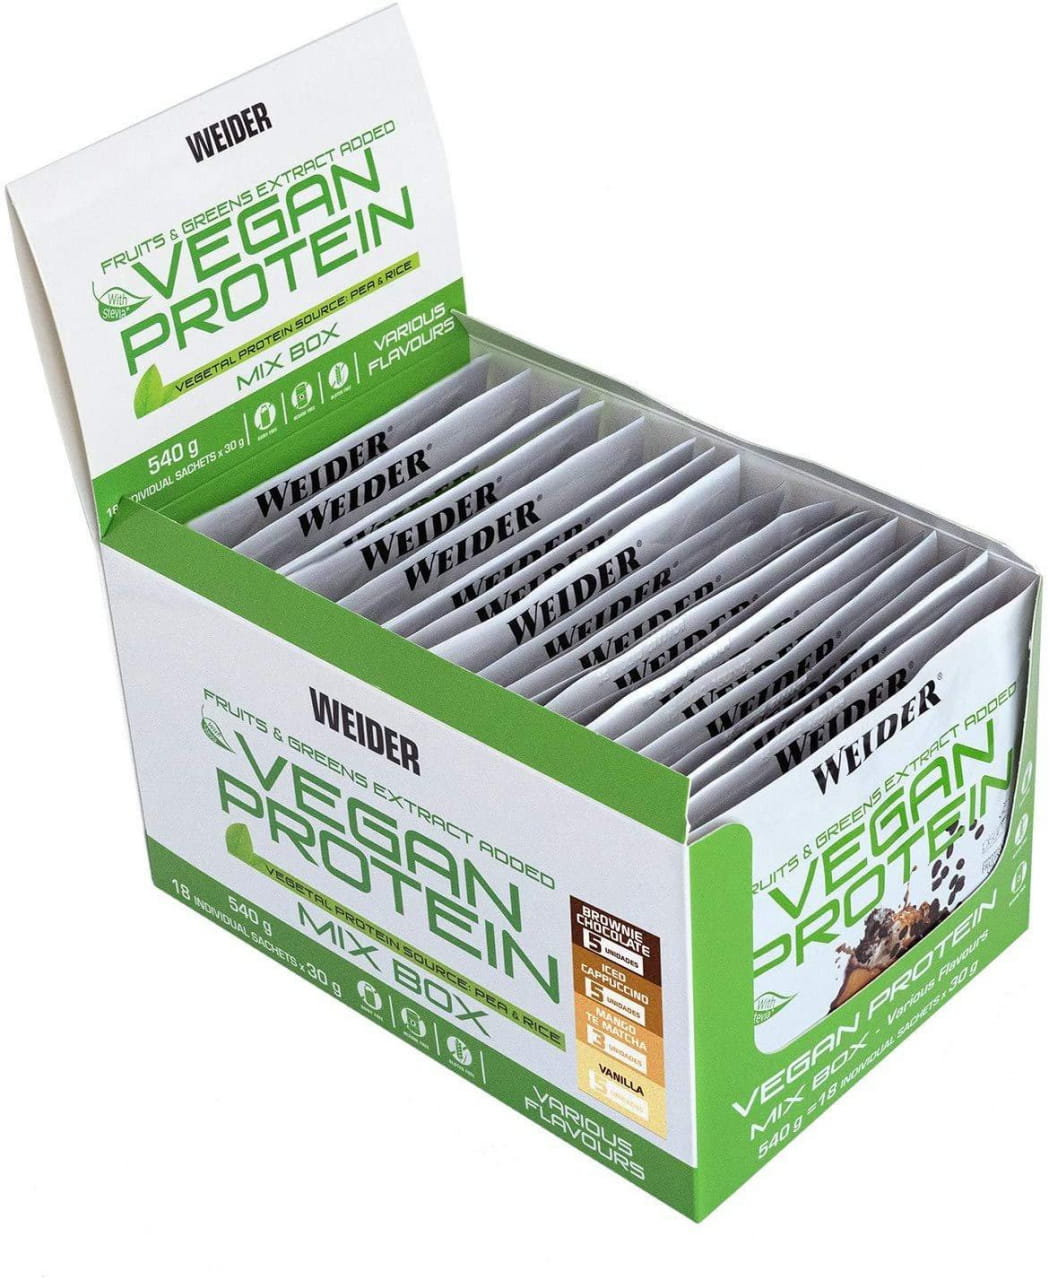 Rostlinný proteinový nápoj Weider Vegan Protein 30g sáček, bílkovinný izolát z extraktu hrachu a rýže